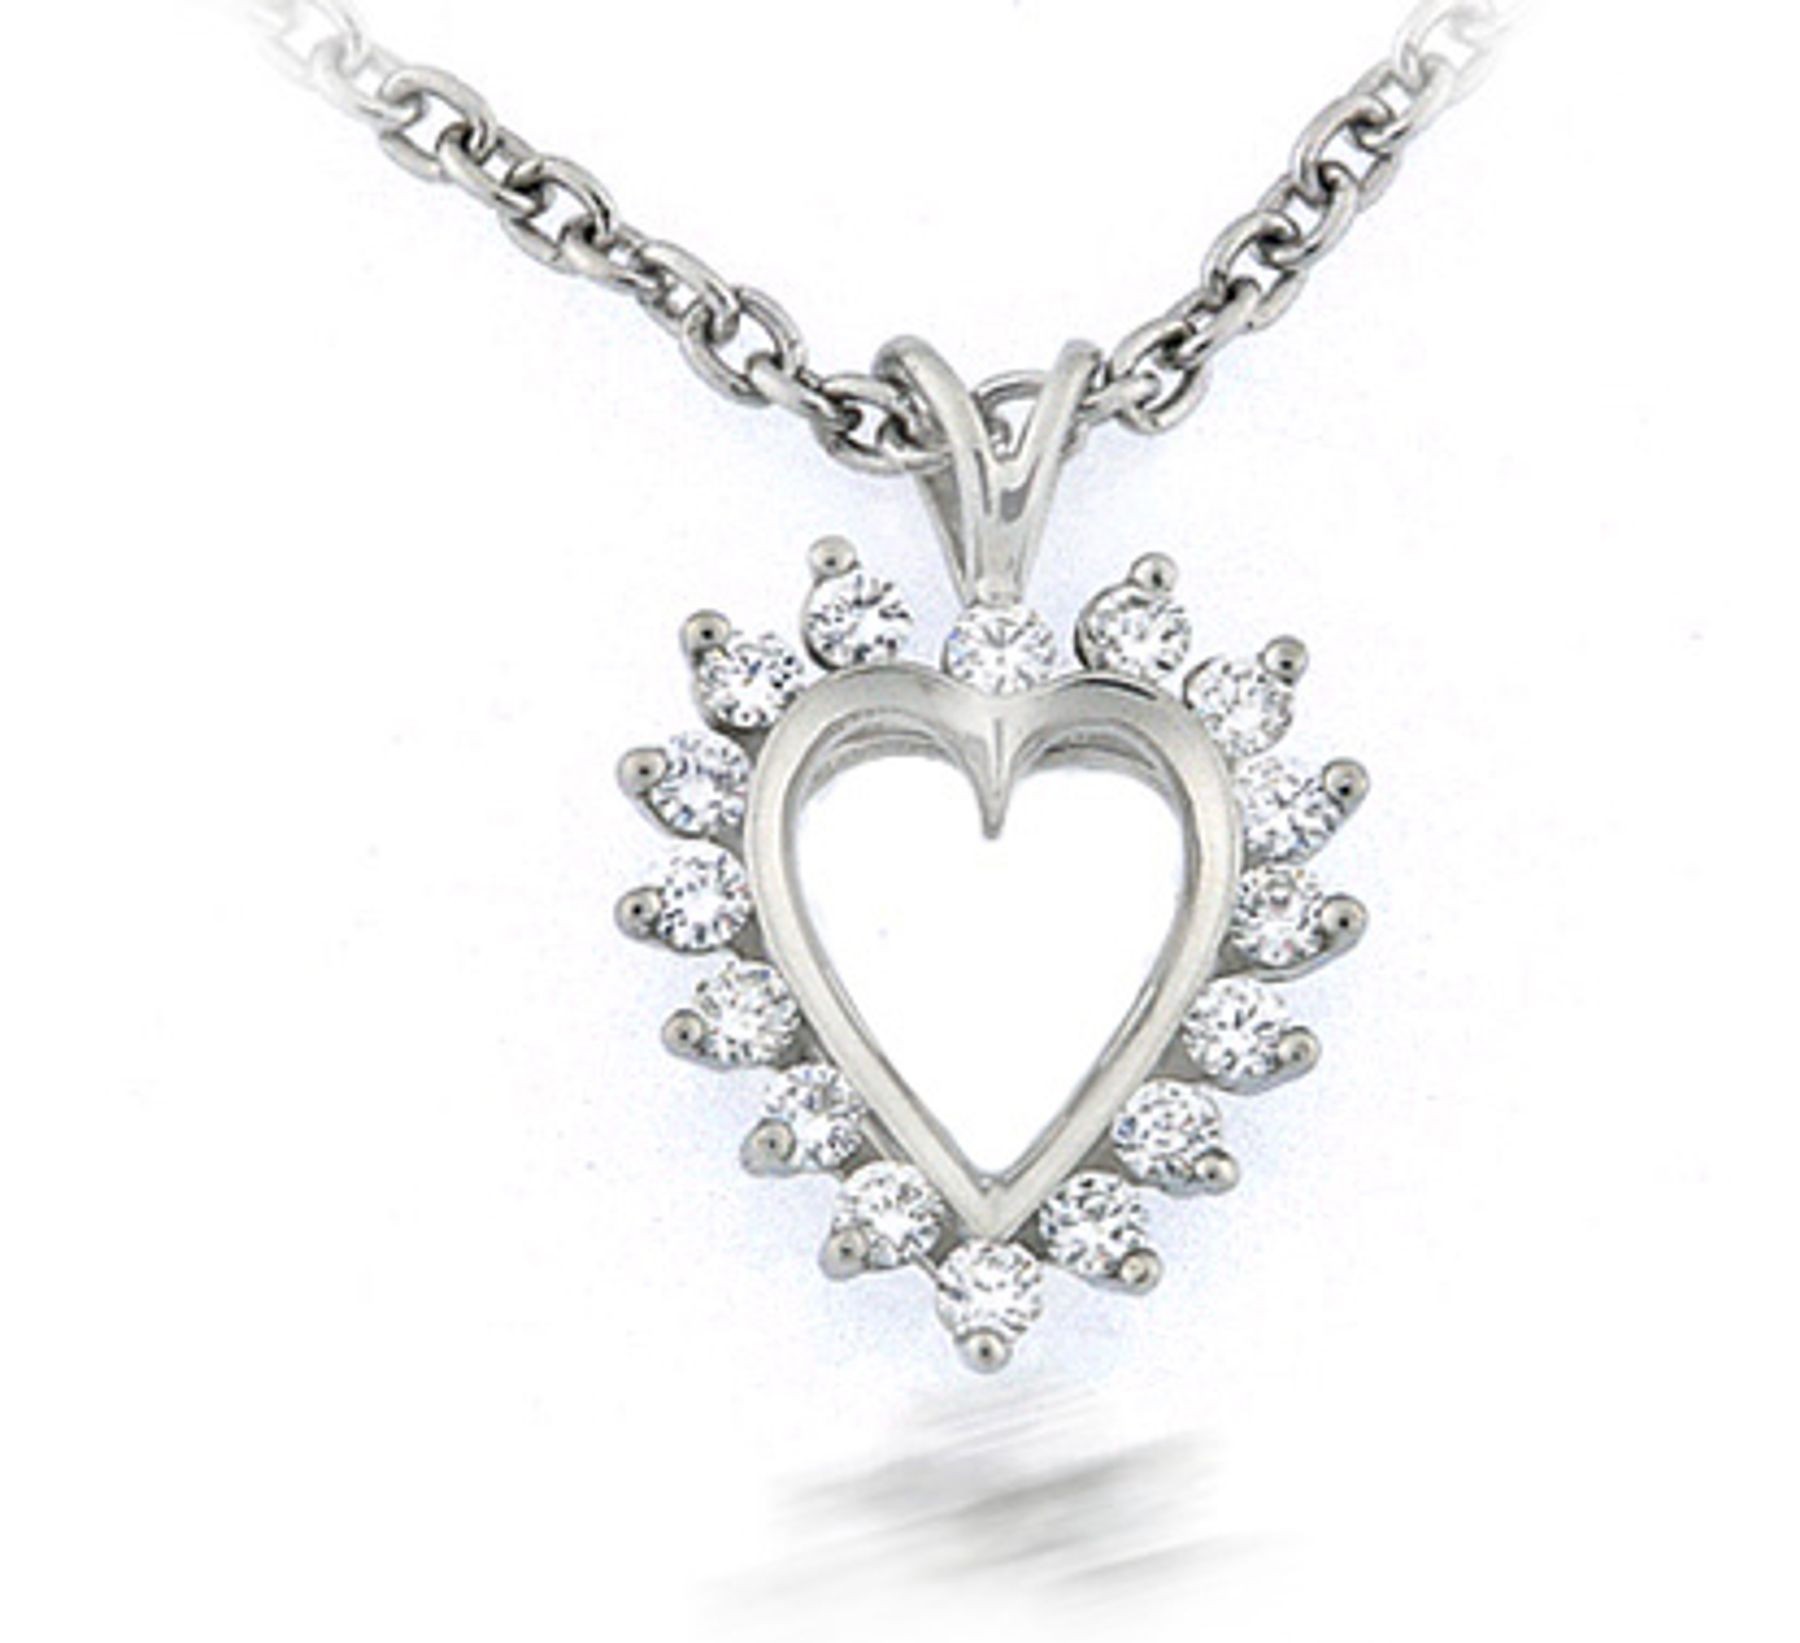 Platinum heart pendant with platinum pendant chain